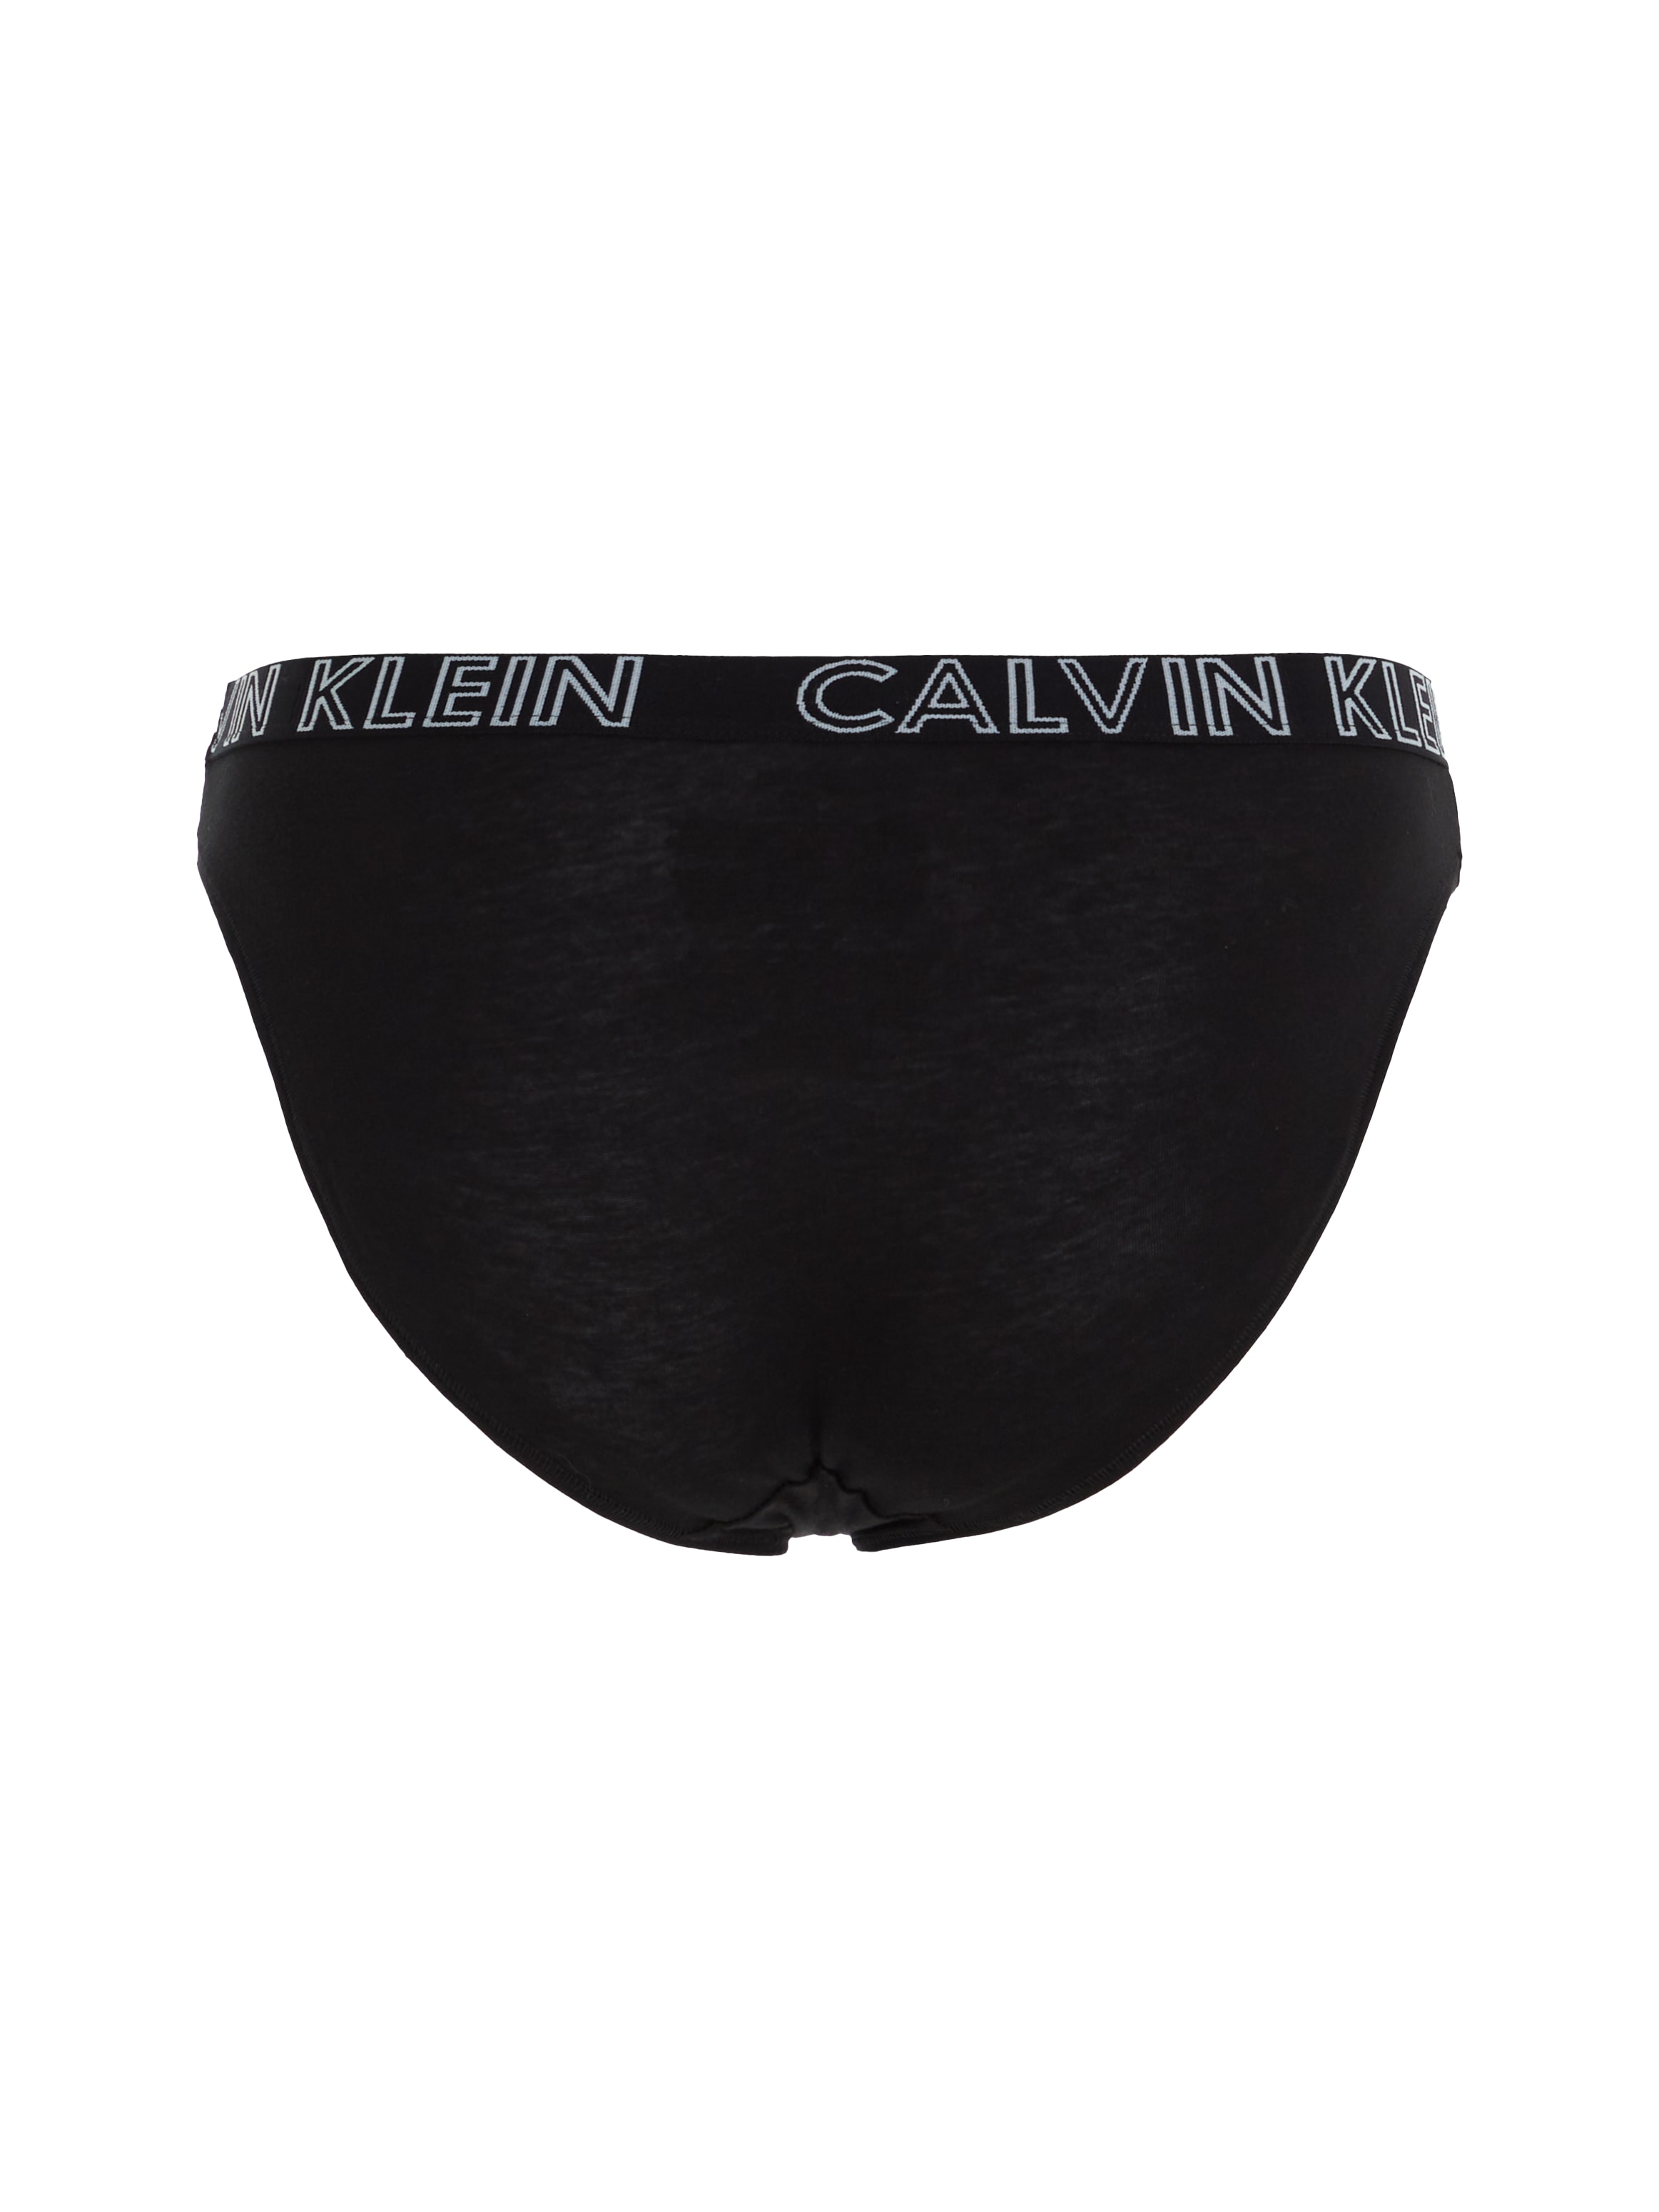 »ULTIMATE mit Calvin Bikinislip Wäsche Klein & Logobündchen bestellen Rechnung COTTON«, auf